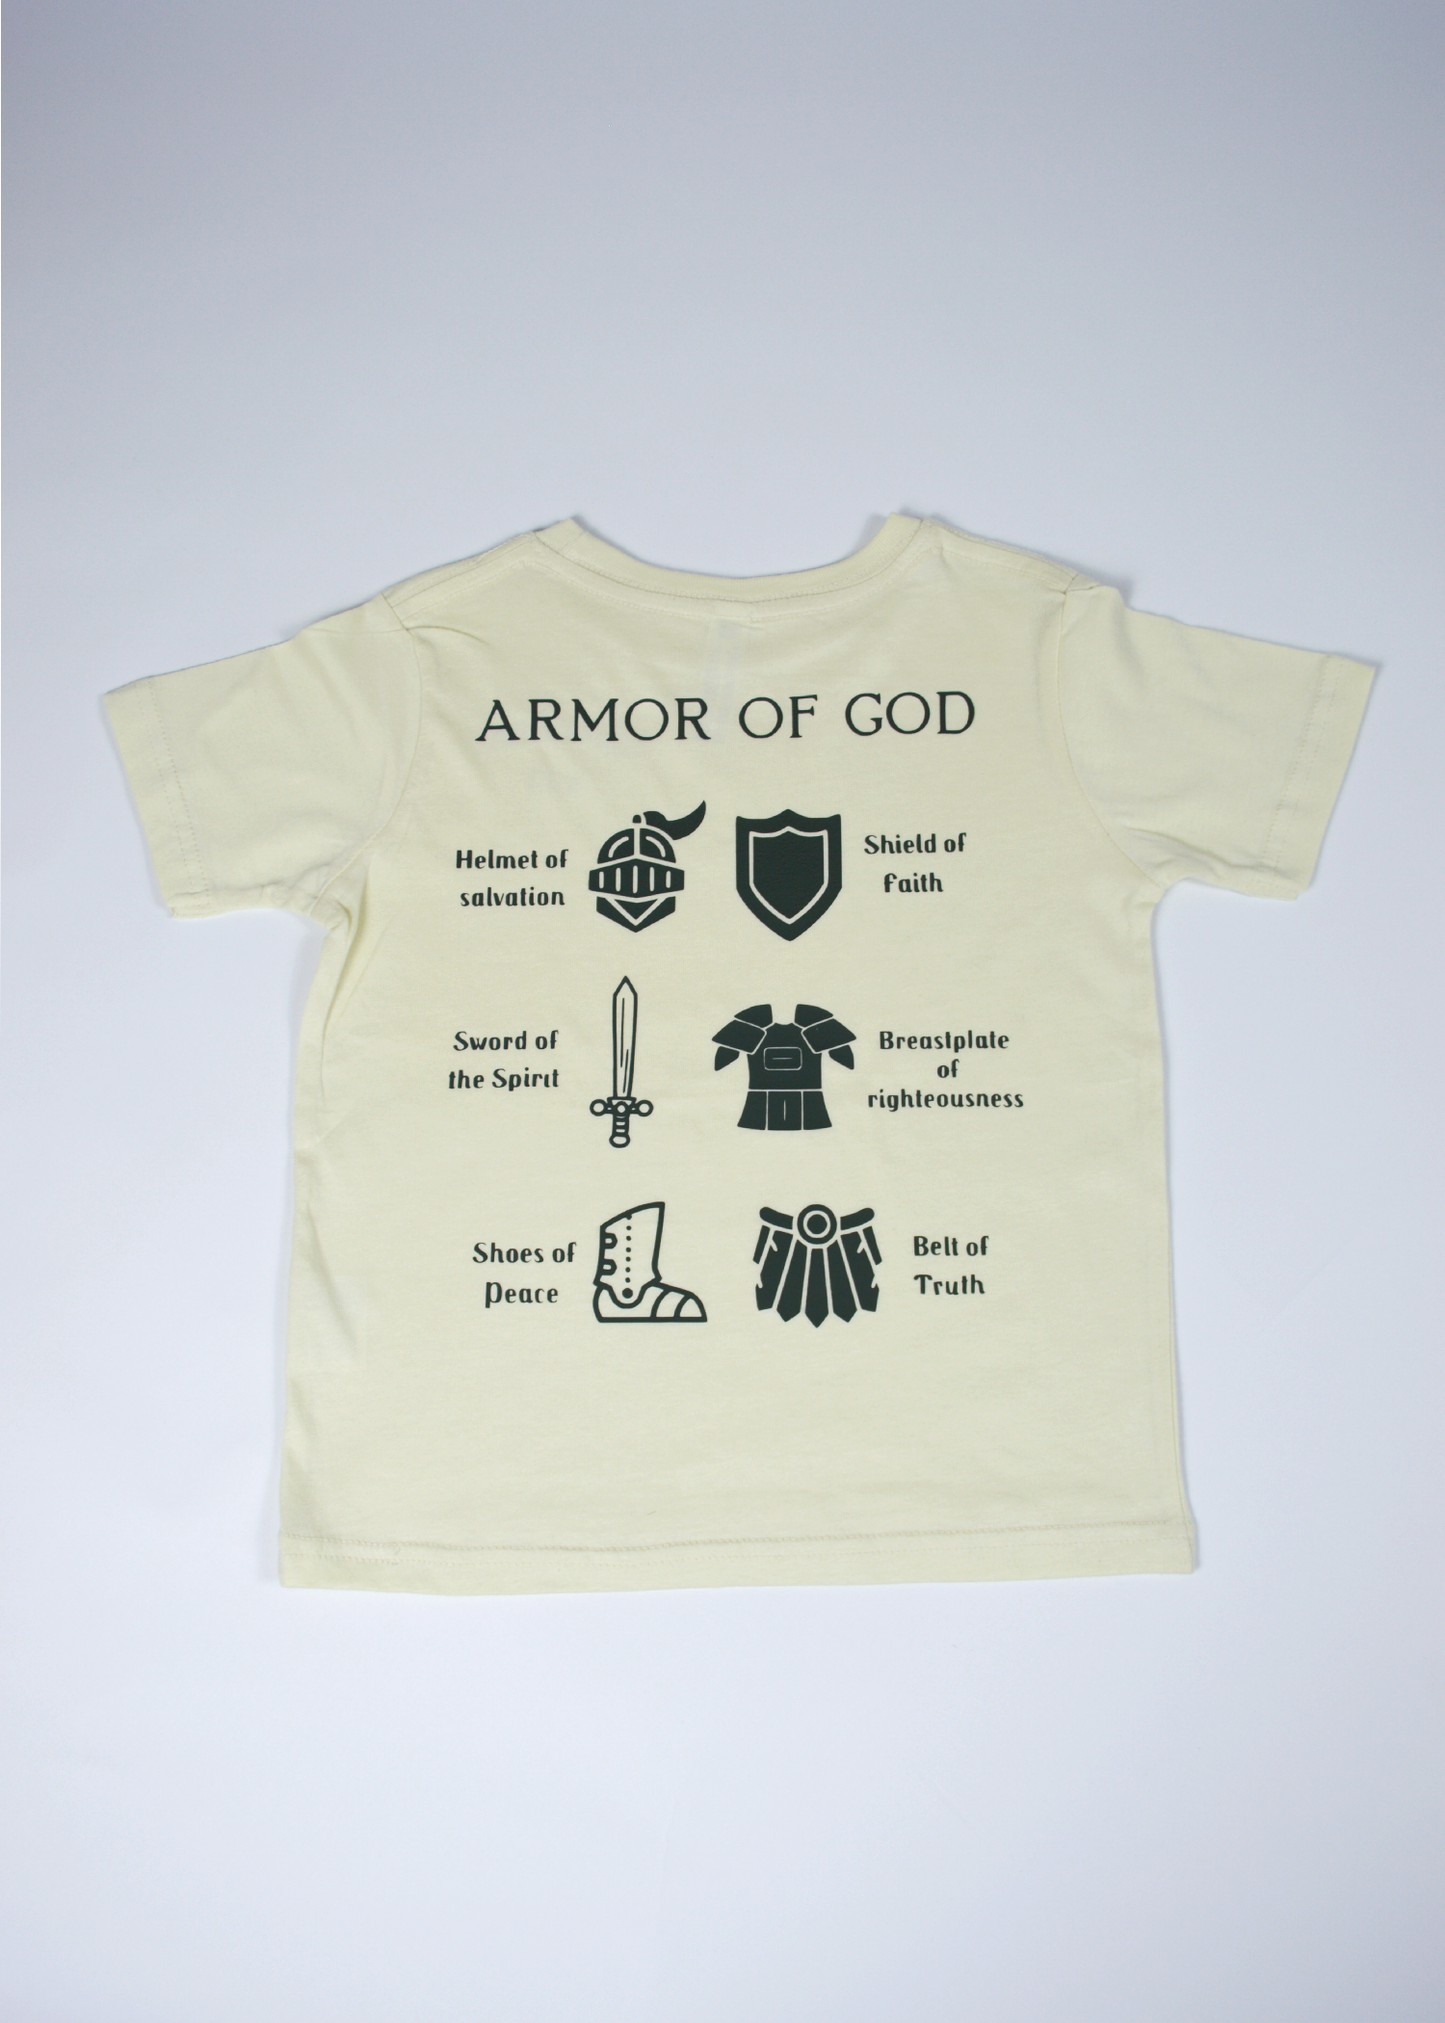 Armor of God Children's Tee